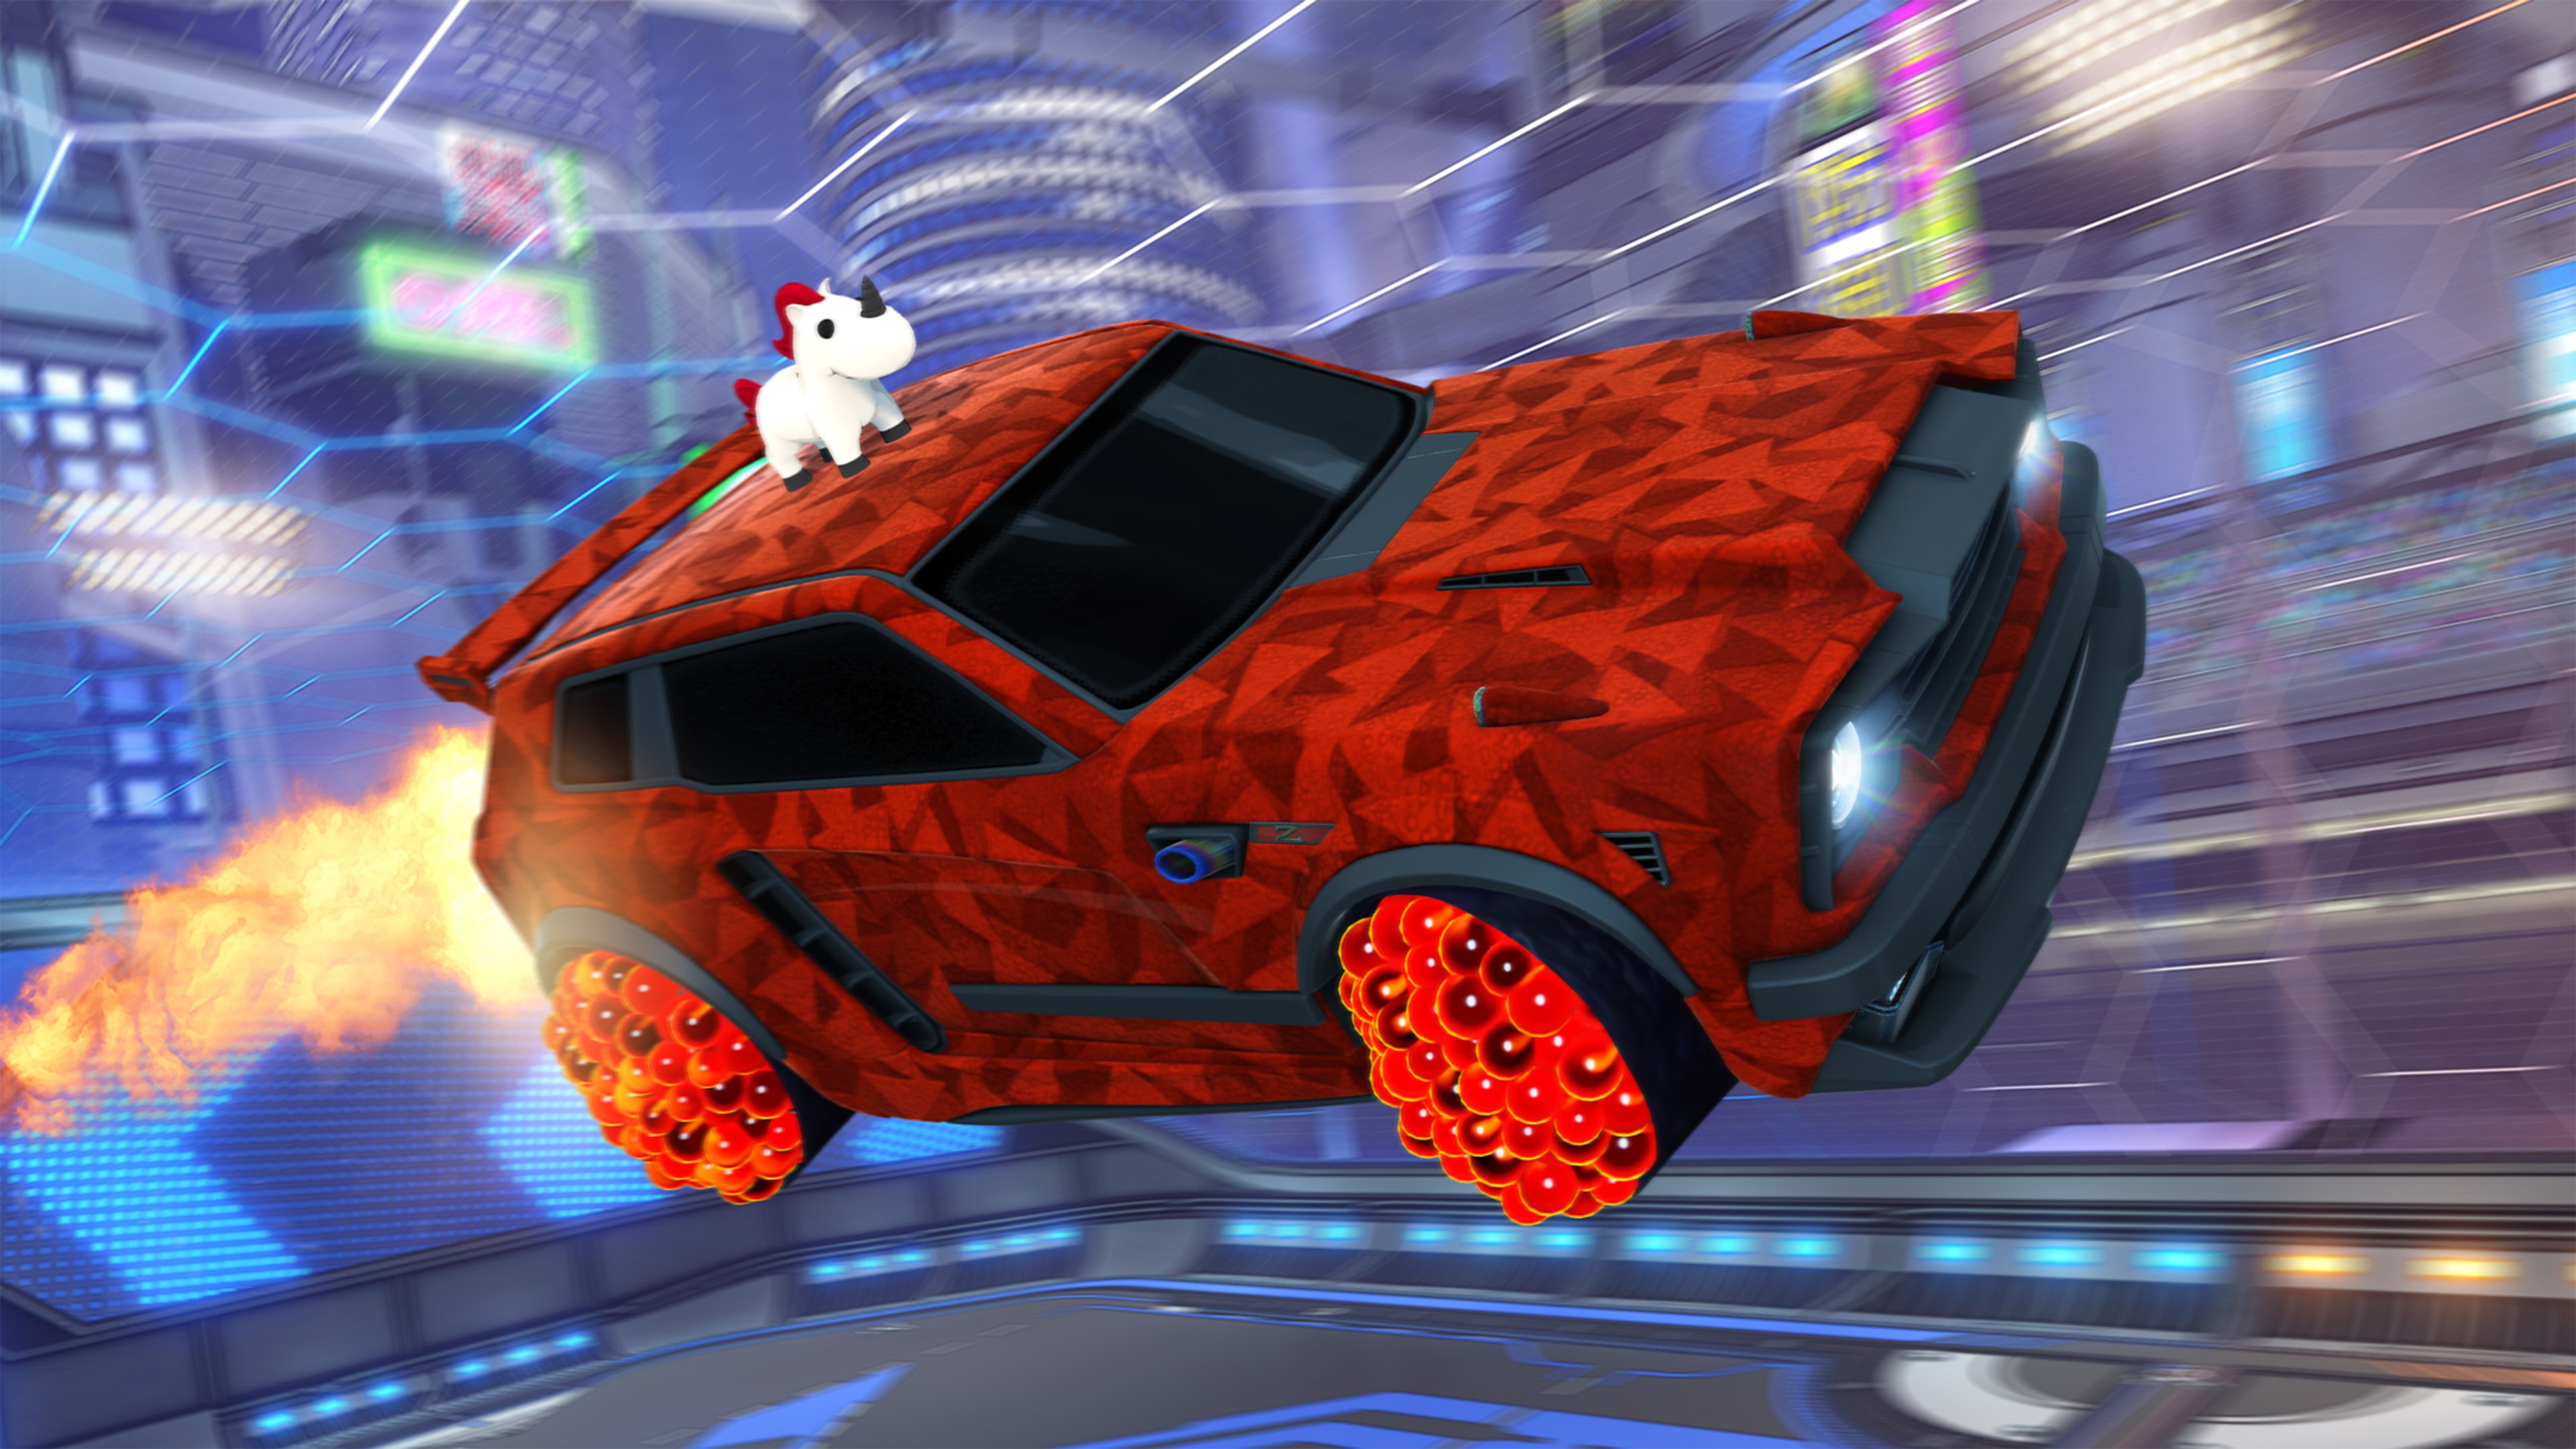 Rocket League snimak ekrana koji prikazuje automobil sa životinjom koja liči na jednoroga na krovu i crvenu geometrijsku sliku